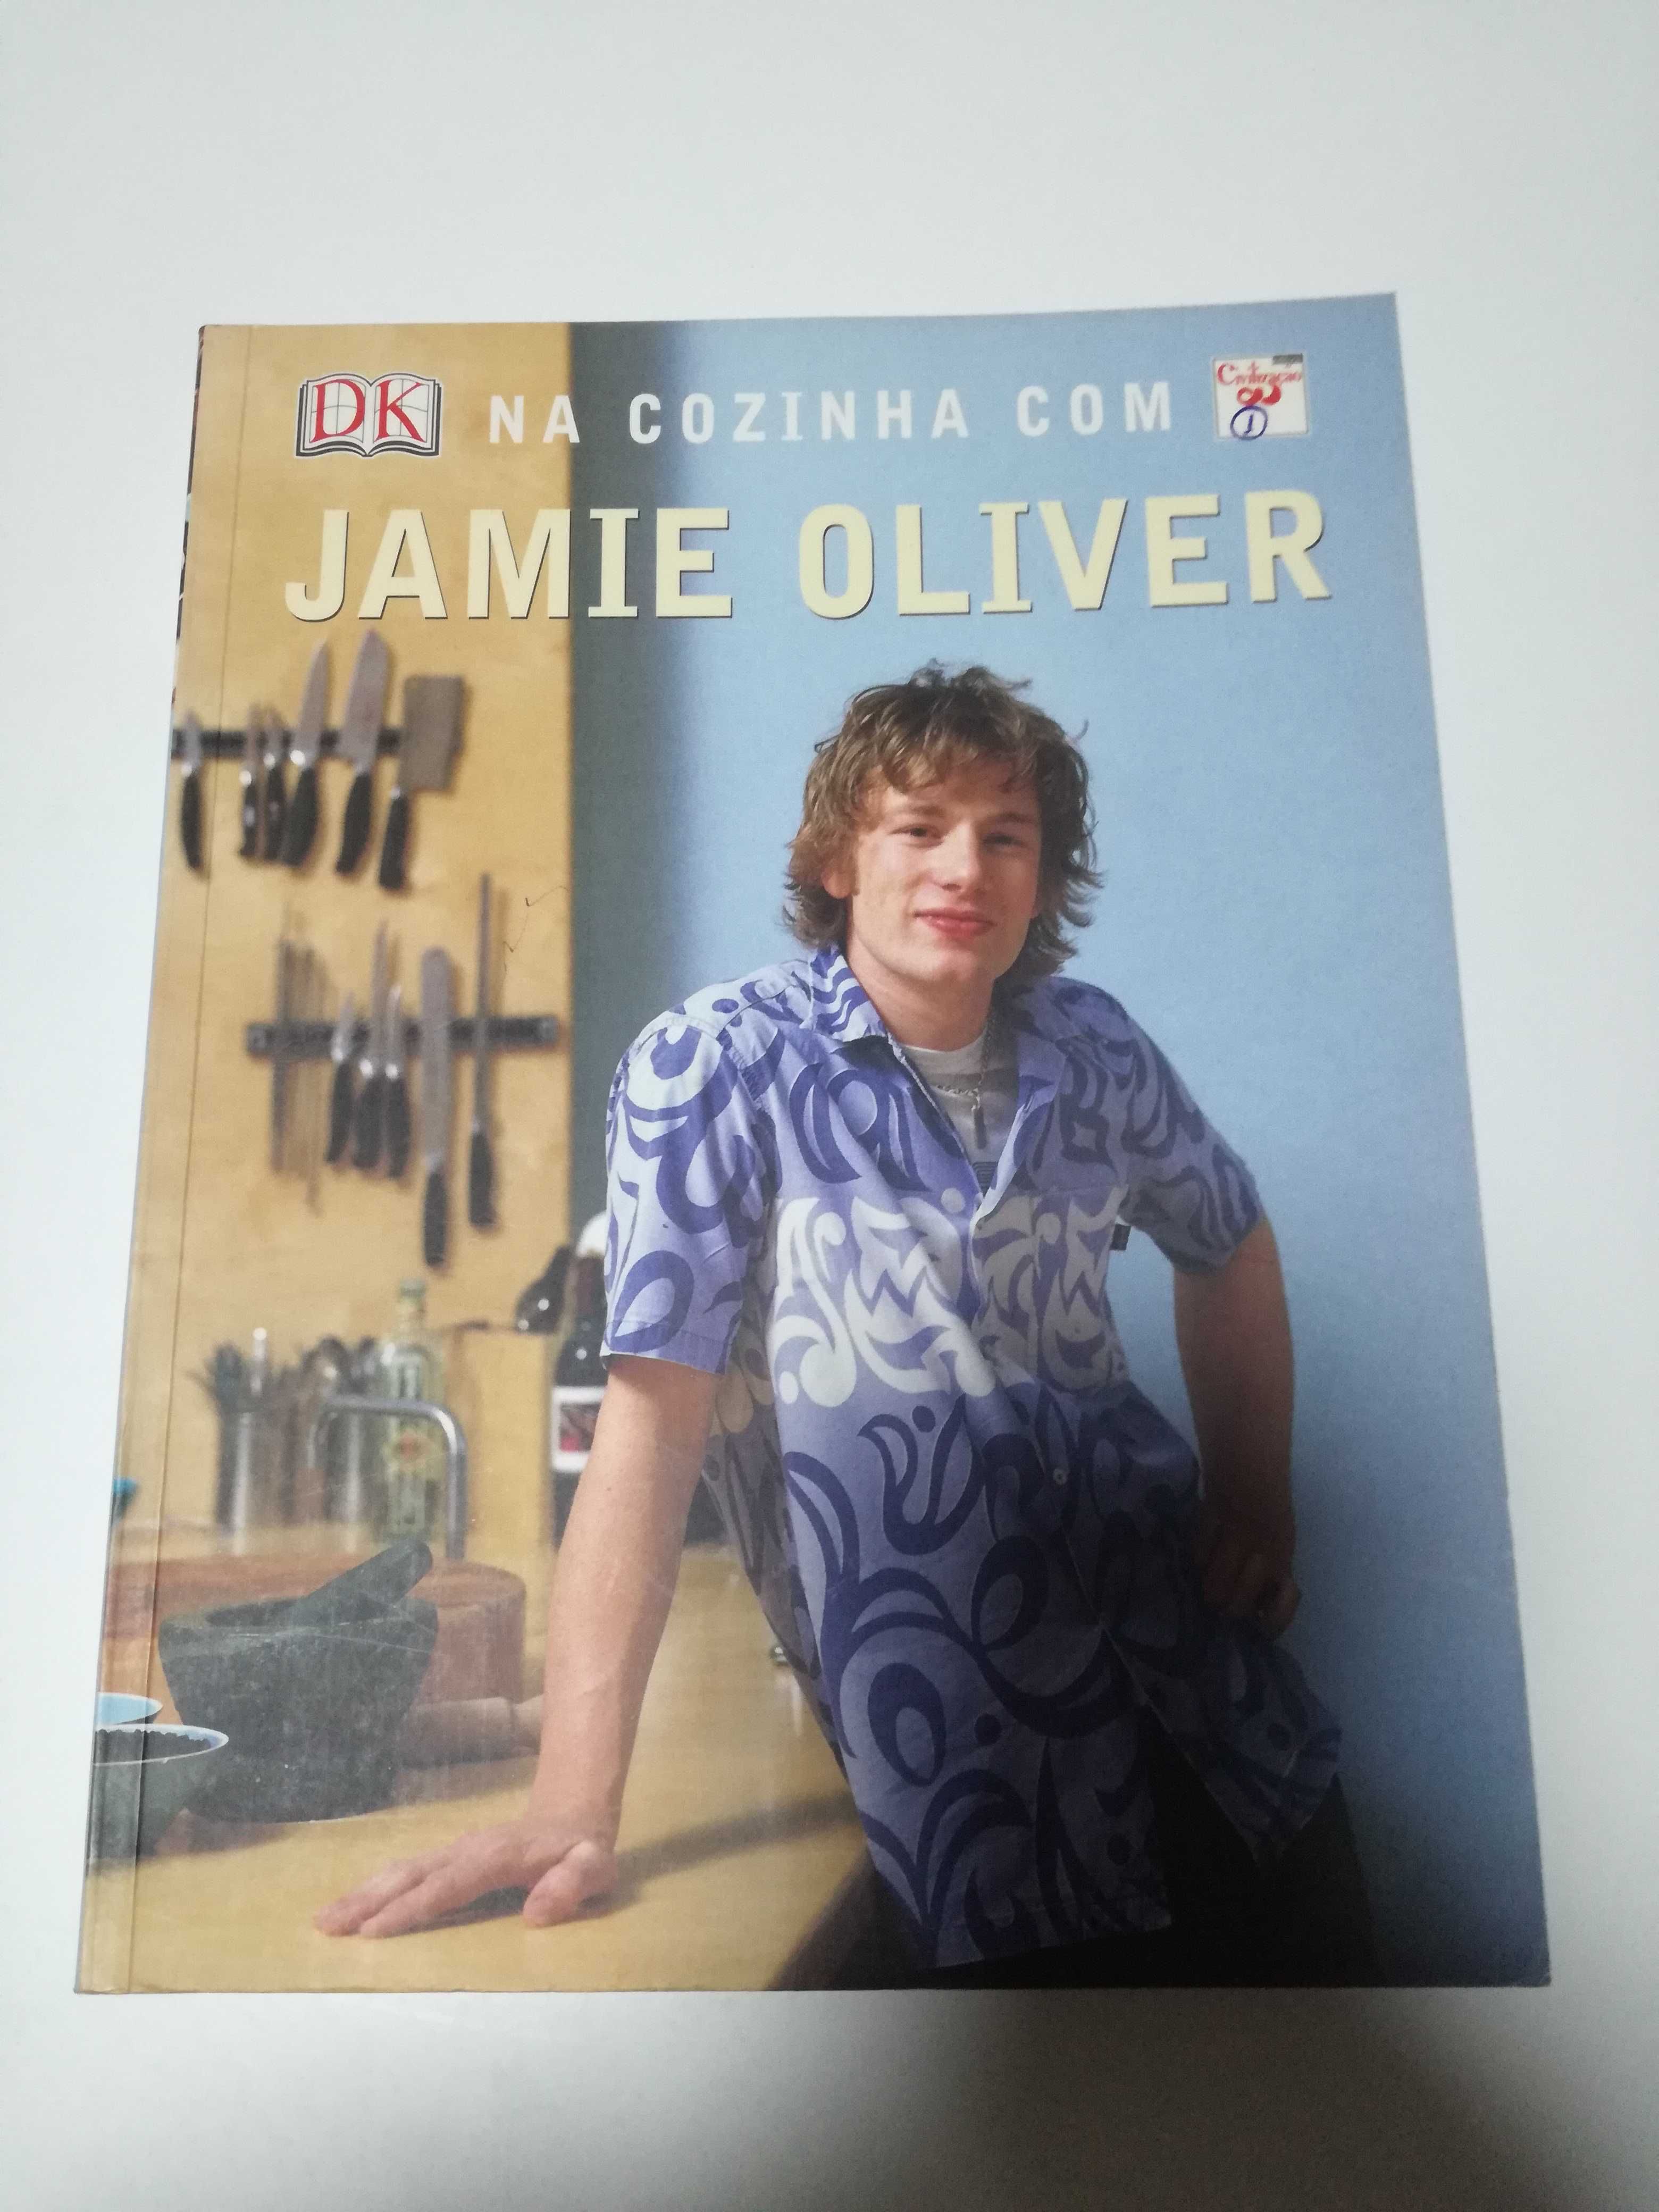 Gostas de cozinhar? tens aqui os livros certos, Jamie Oliver o Mestre